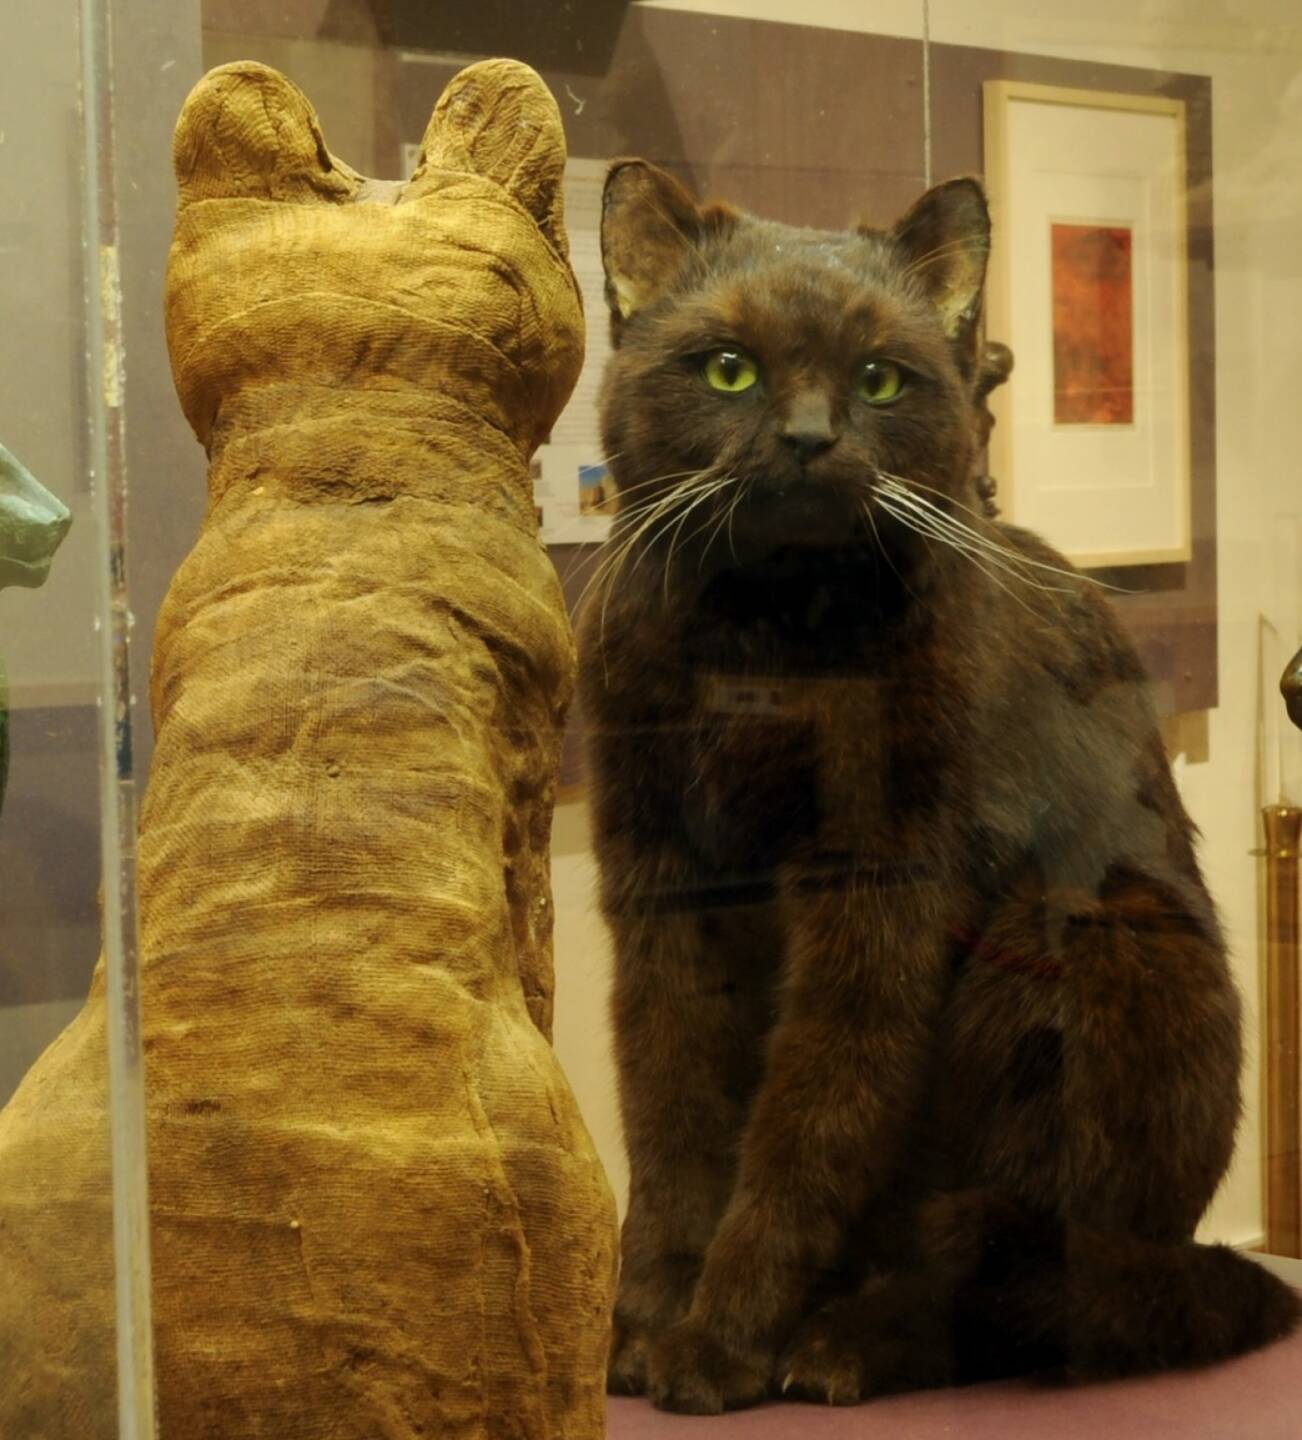 Naturhistorisches Museum: Am 8. August 2017 findet der Internationale Katzentag statt, schwarze Katze, Bild: NHM Wien